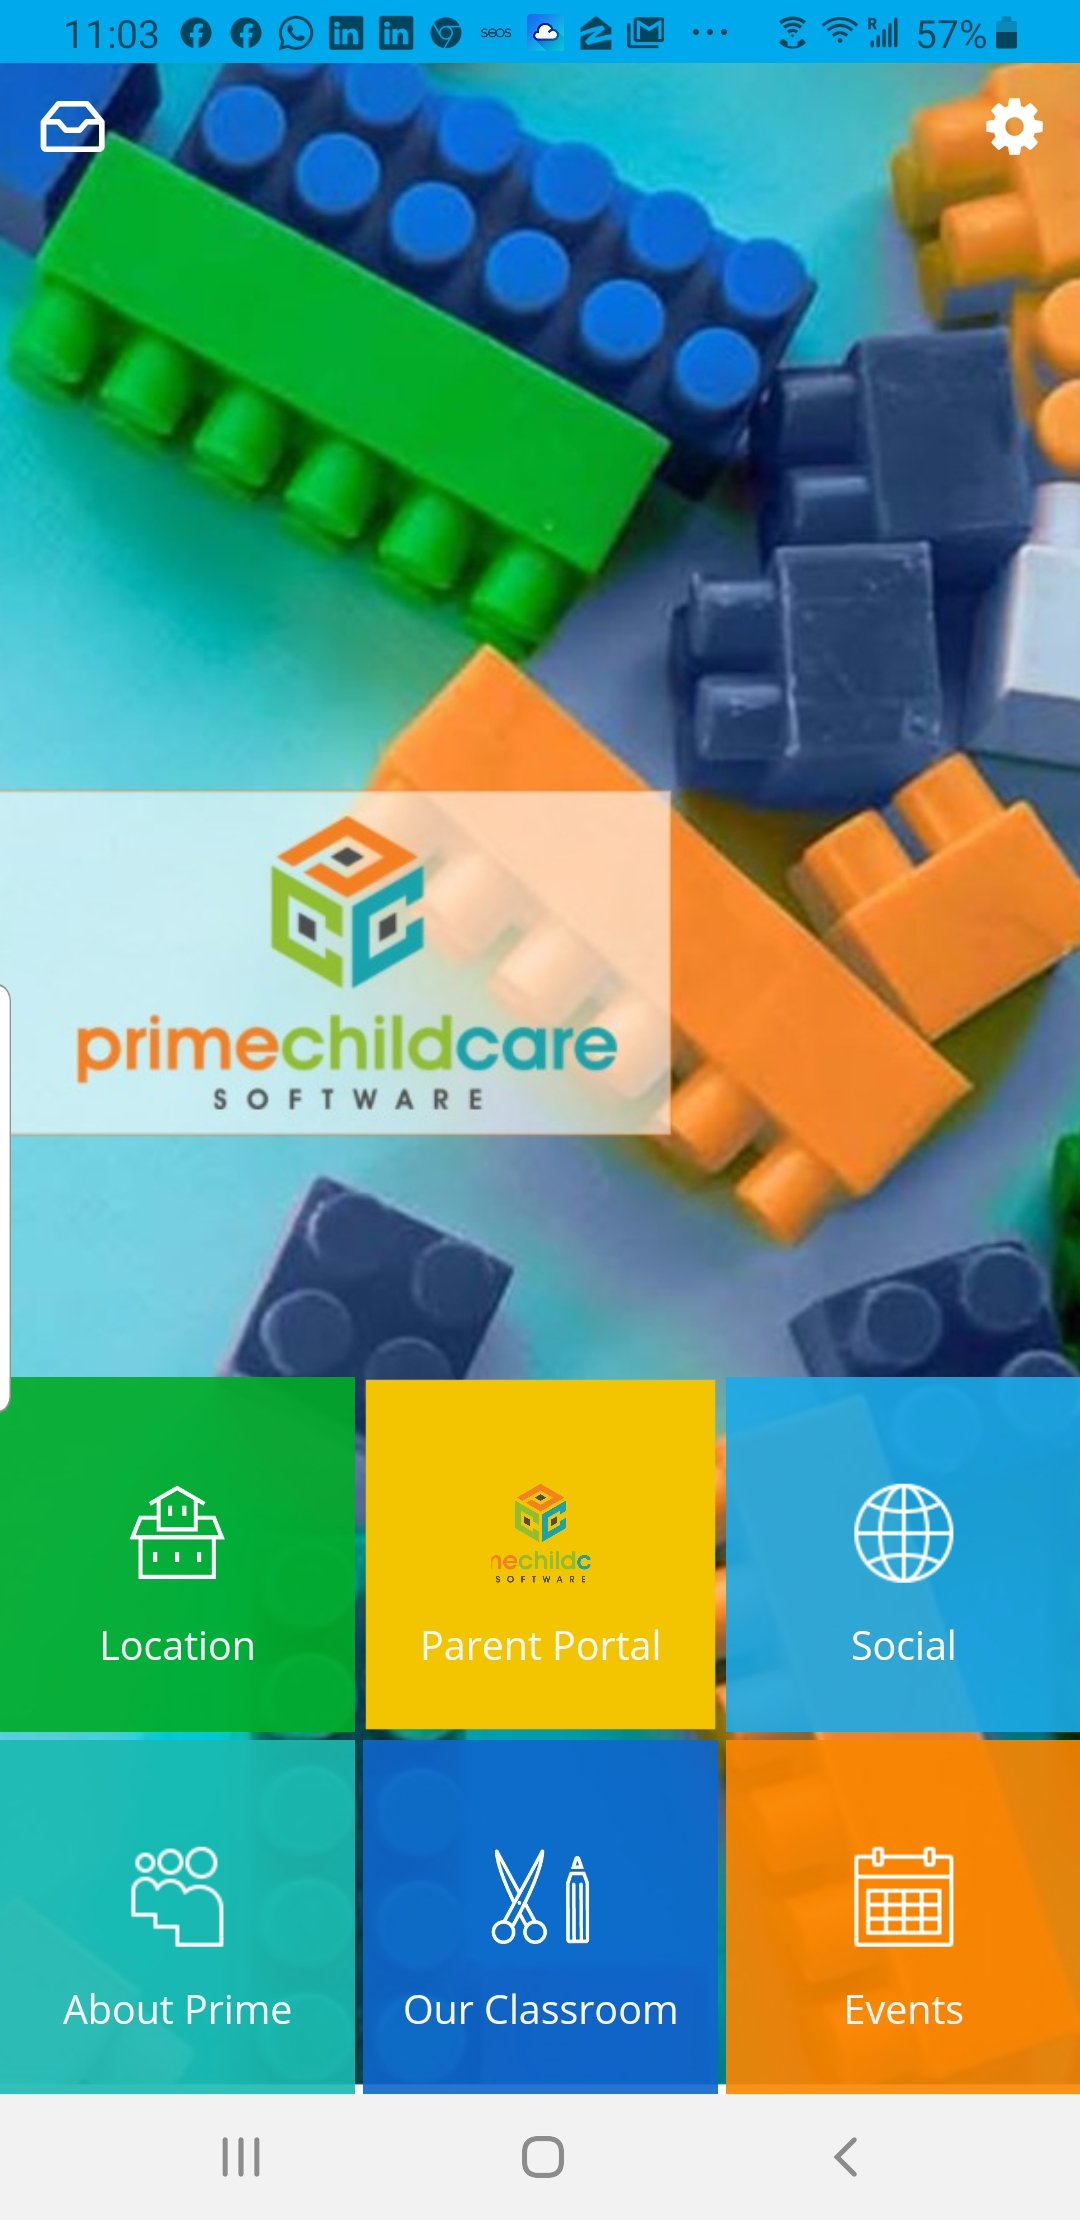 Prime Child Care Software - 1